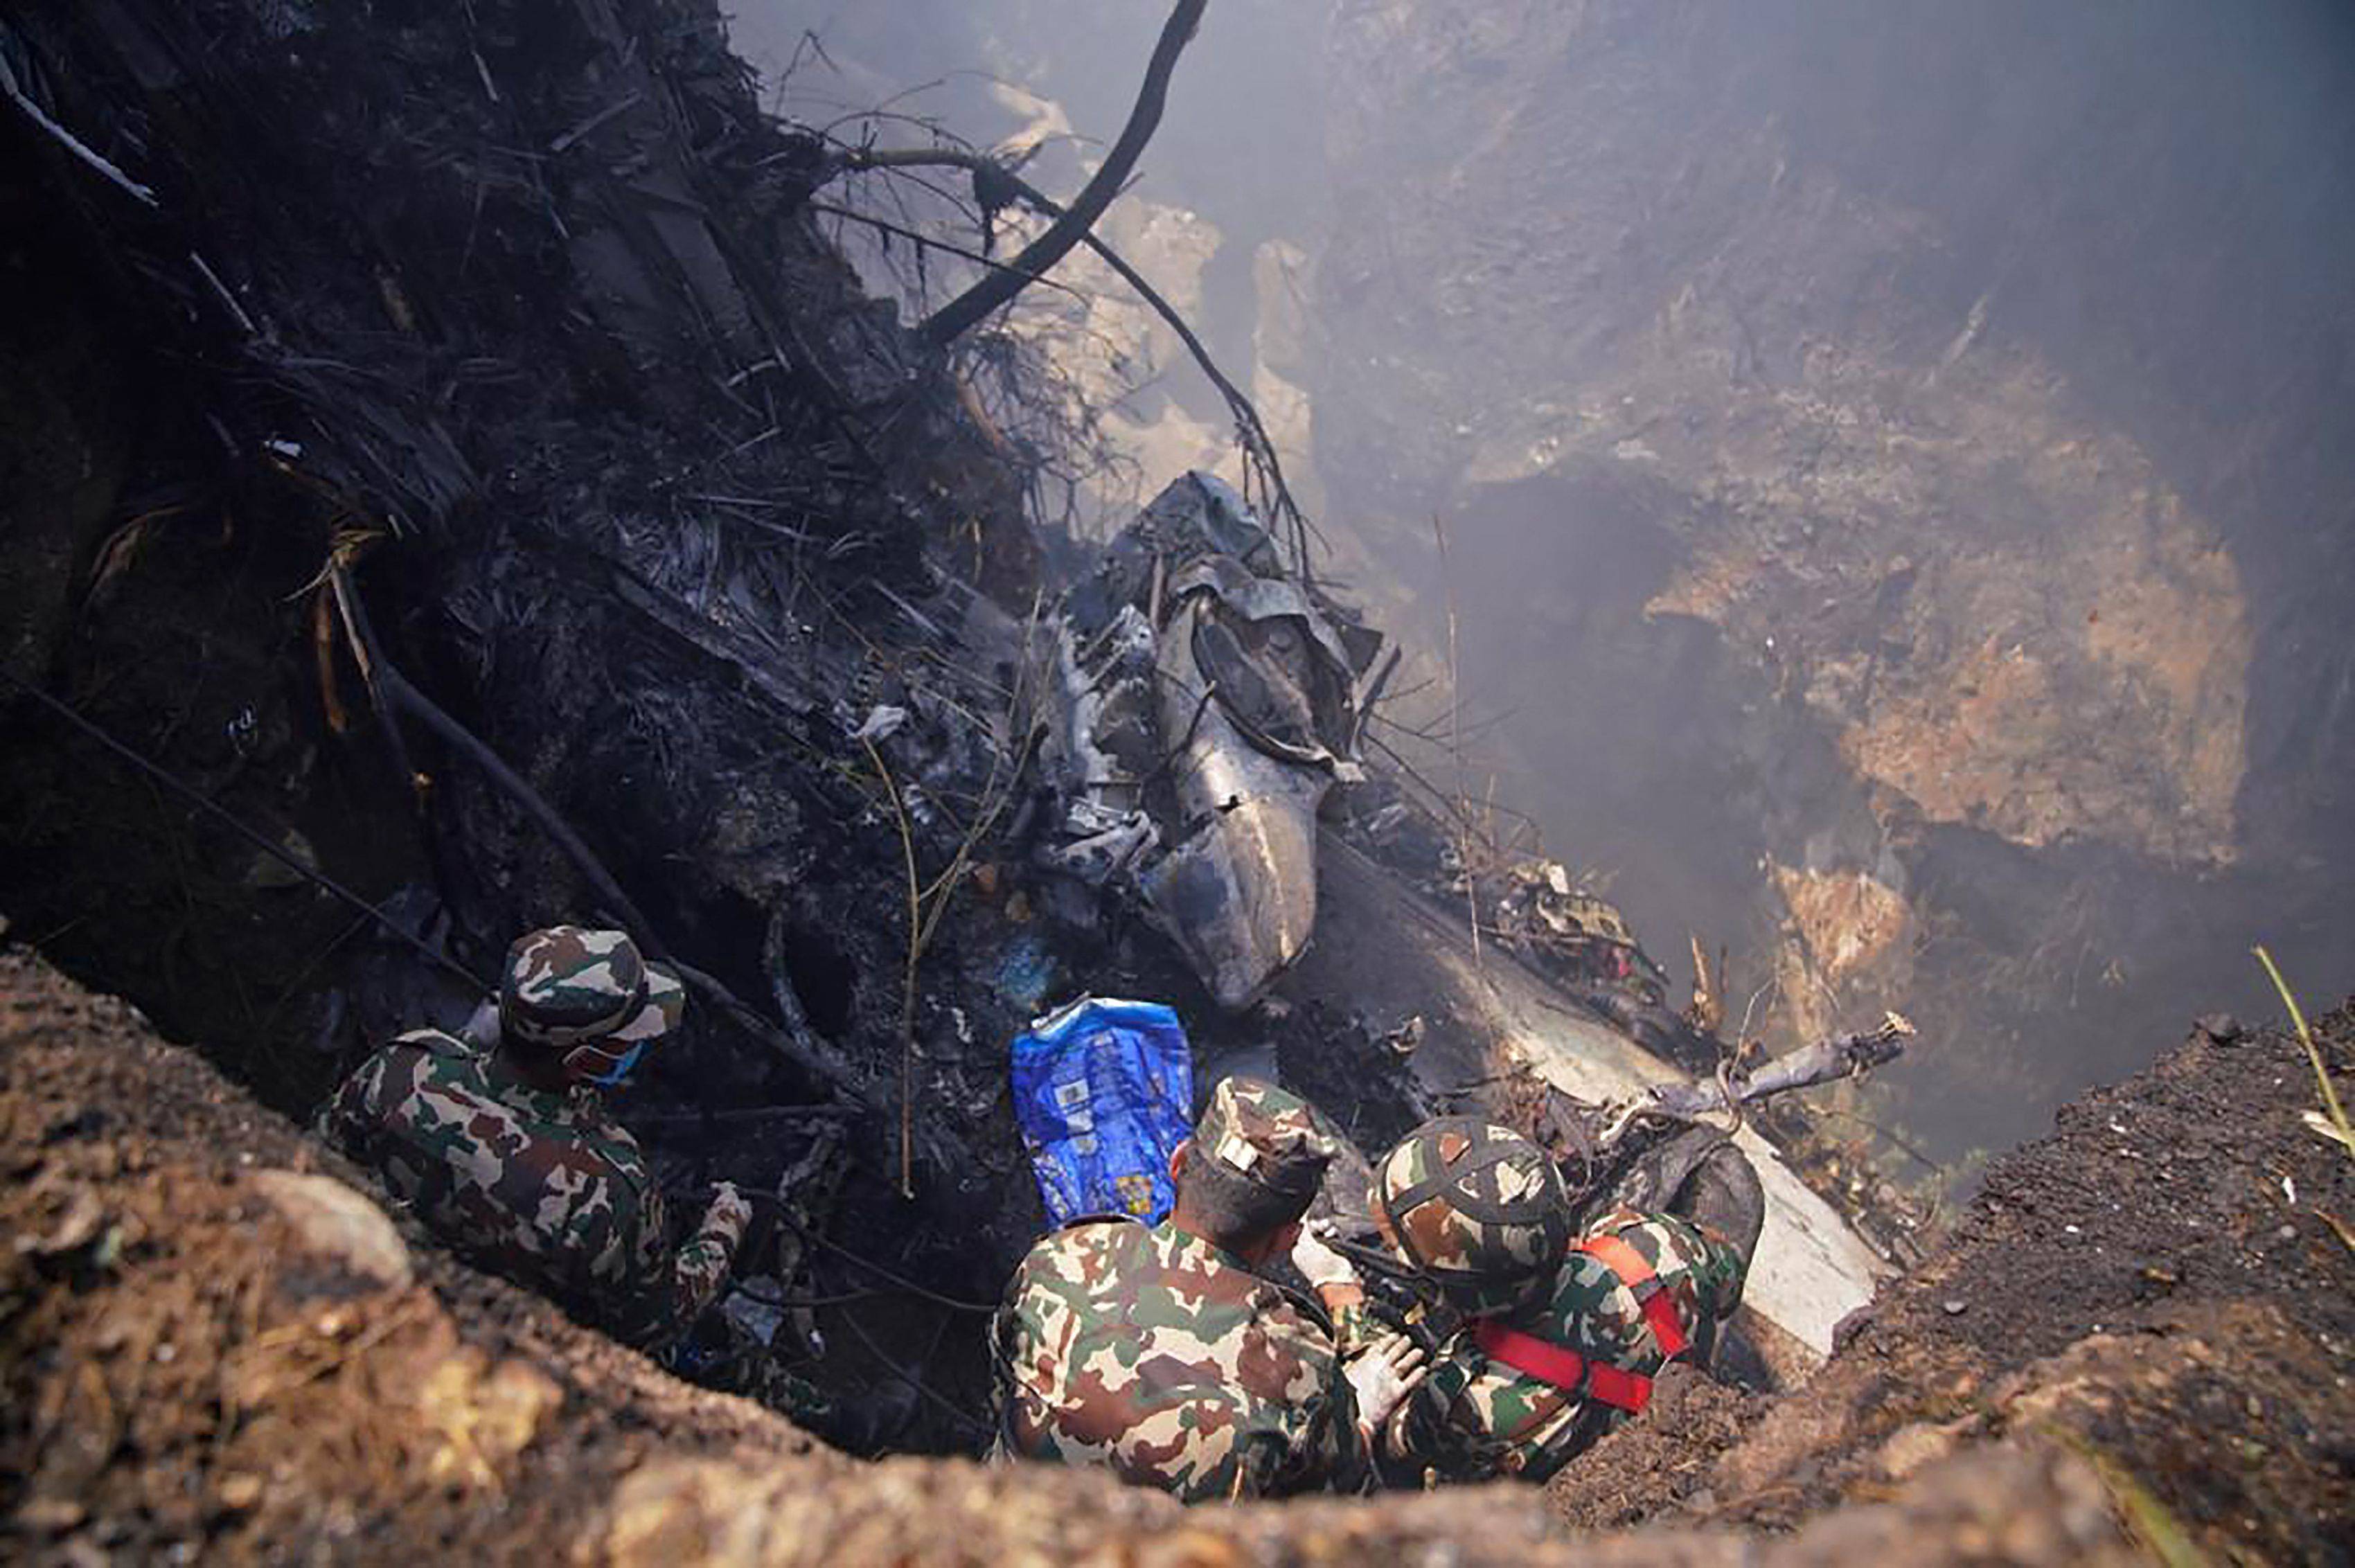 尼泊尔搭载72人的客机坠毁,已发现幸存者